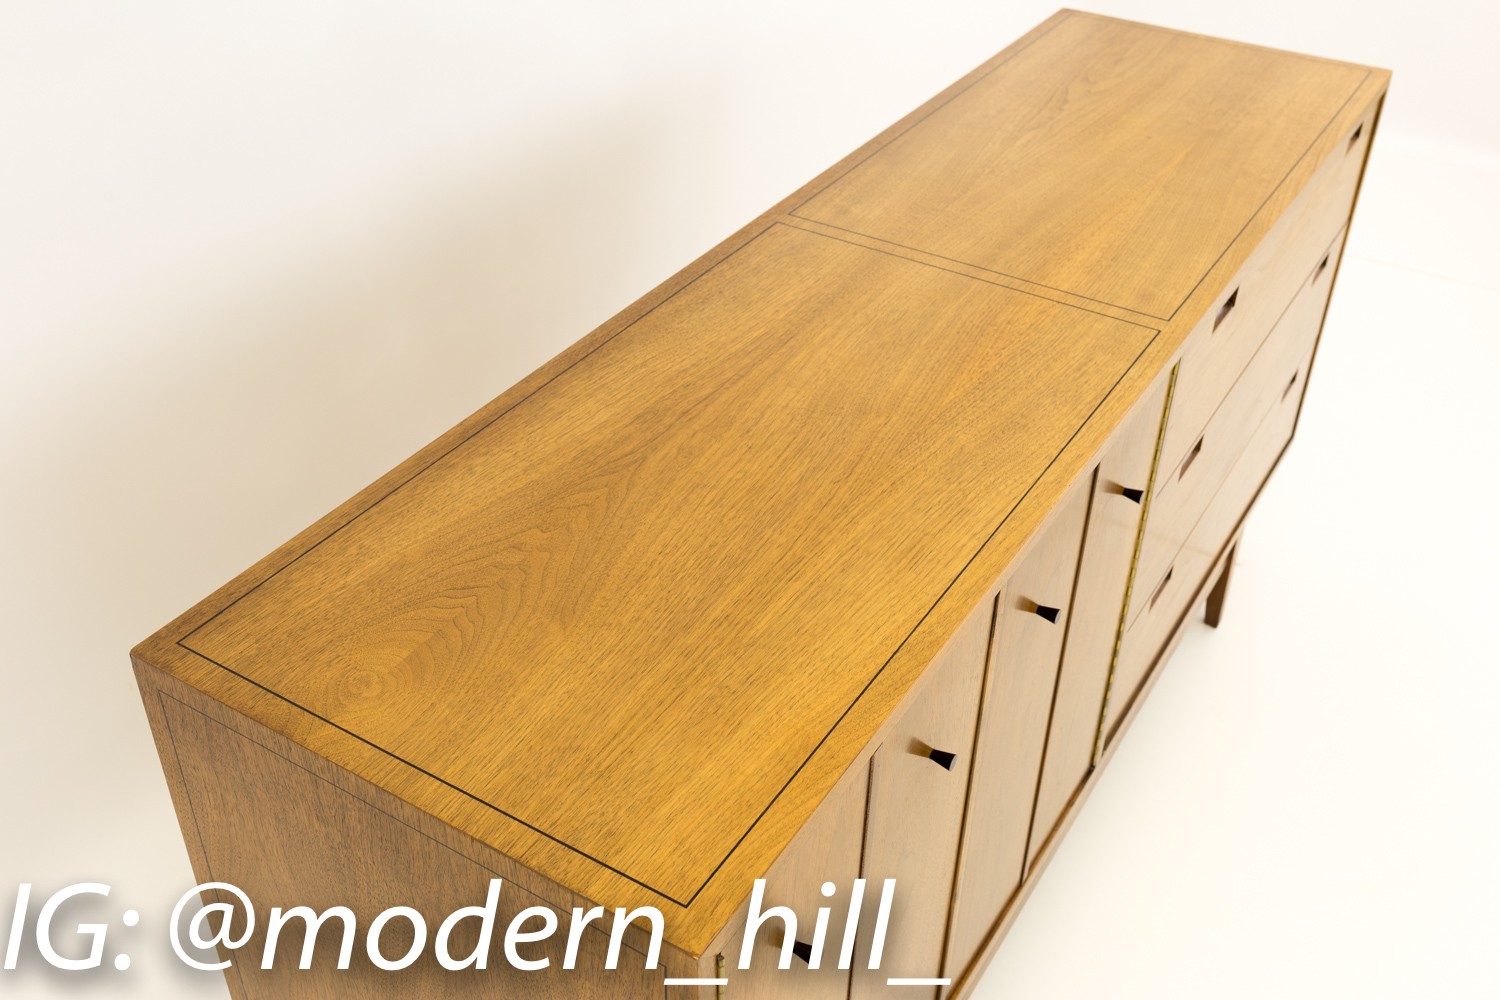 American of Martinsville Mid Century Walnut 6 Drawer Dresser Buffet Credenza Sideboard